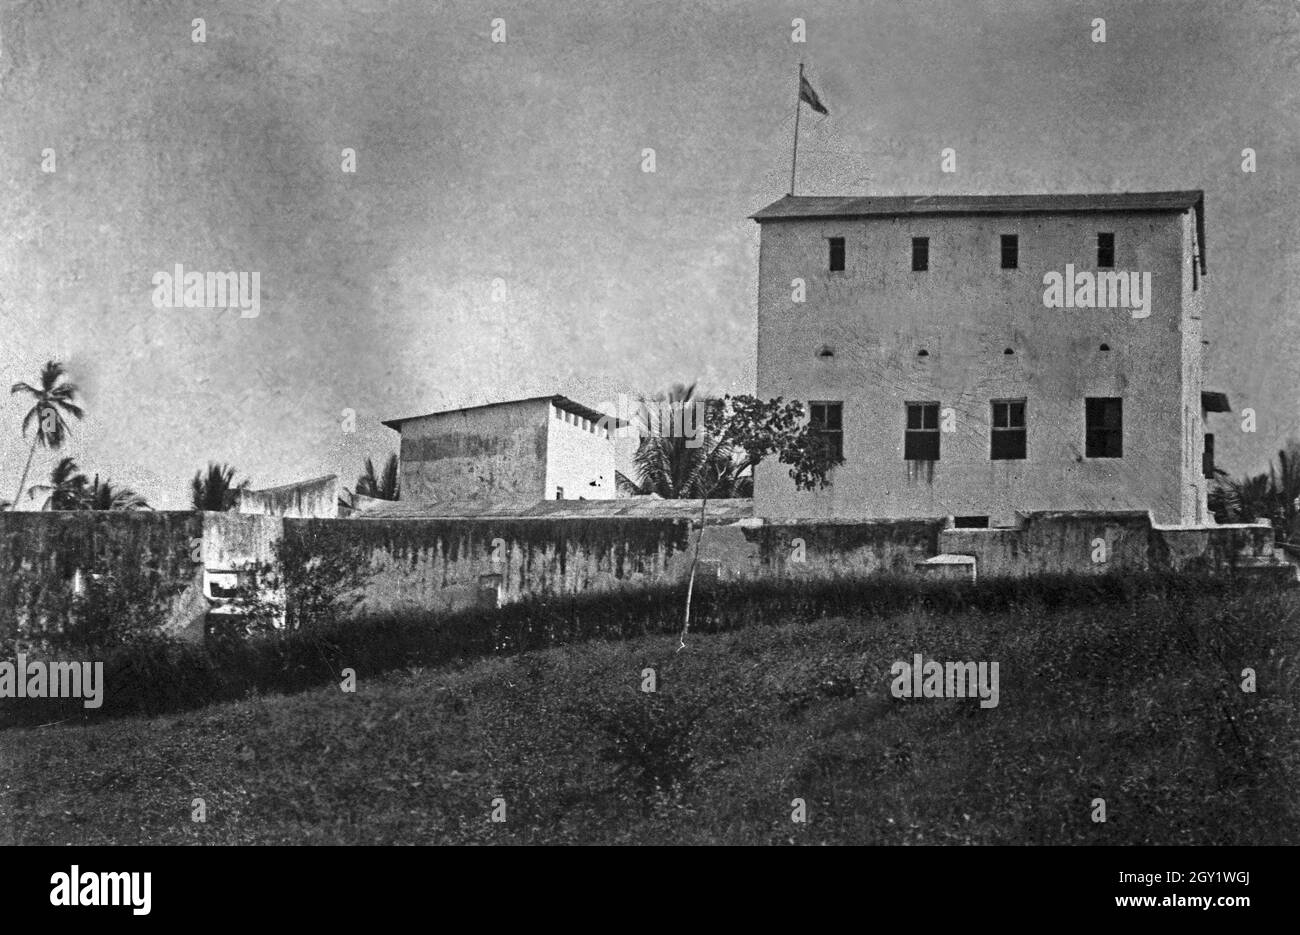 Deutsches Amtsgebäude à Dar es Salam, Deutsch-Ostafrika 1900er Jahre. Bâtiment d'administration allemand à Dar es Salam, Afrique de l'est allemande des années 1900. Banque D'Images